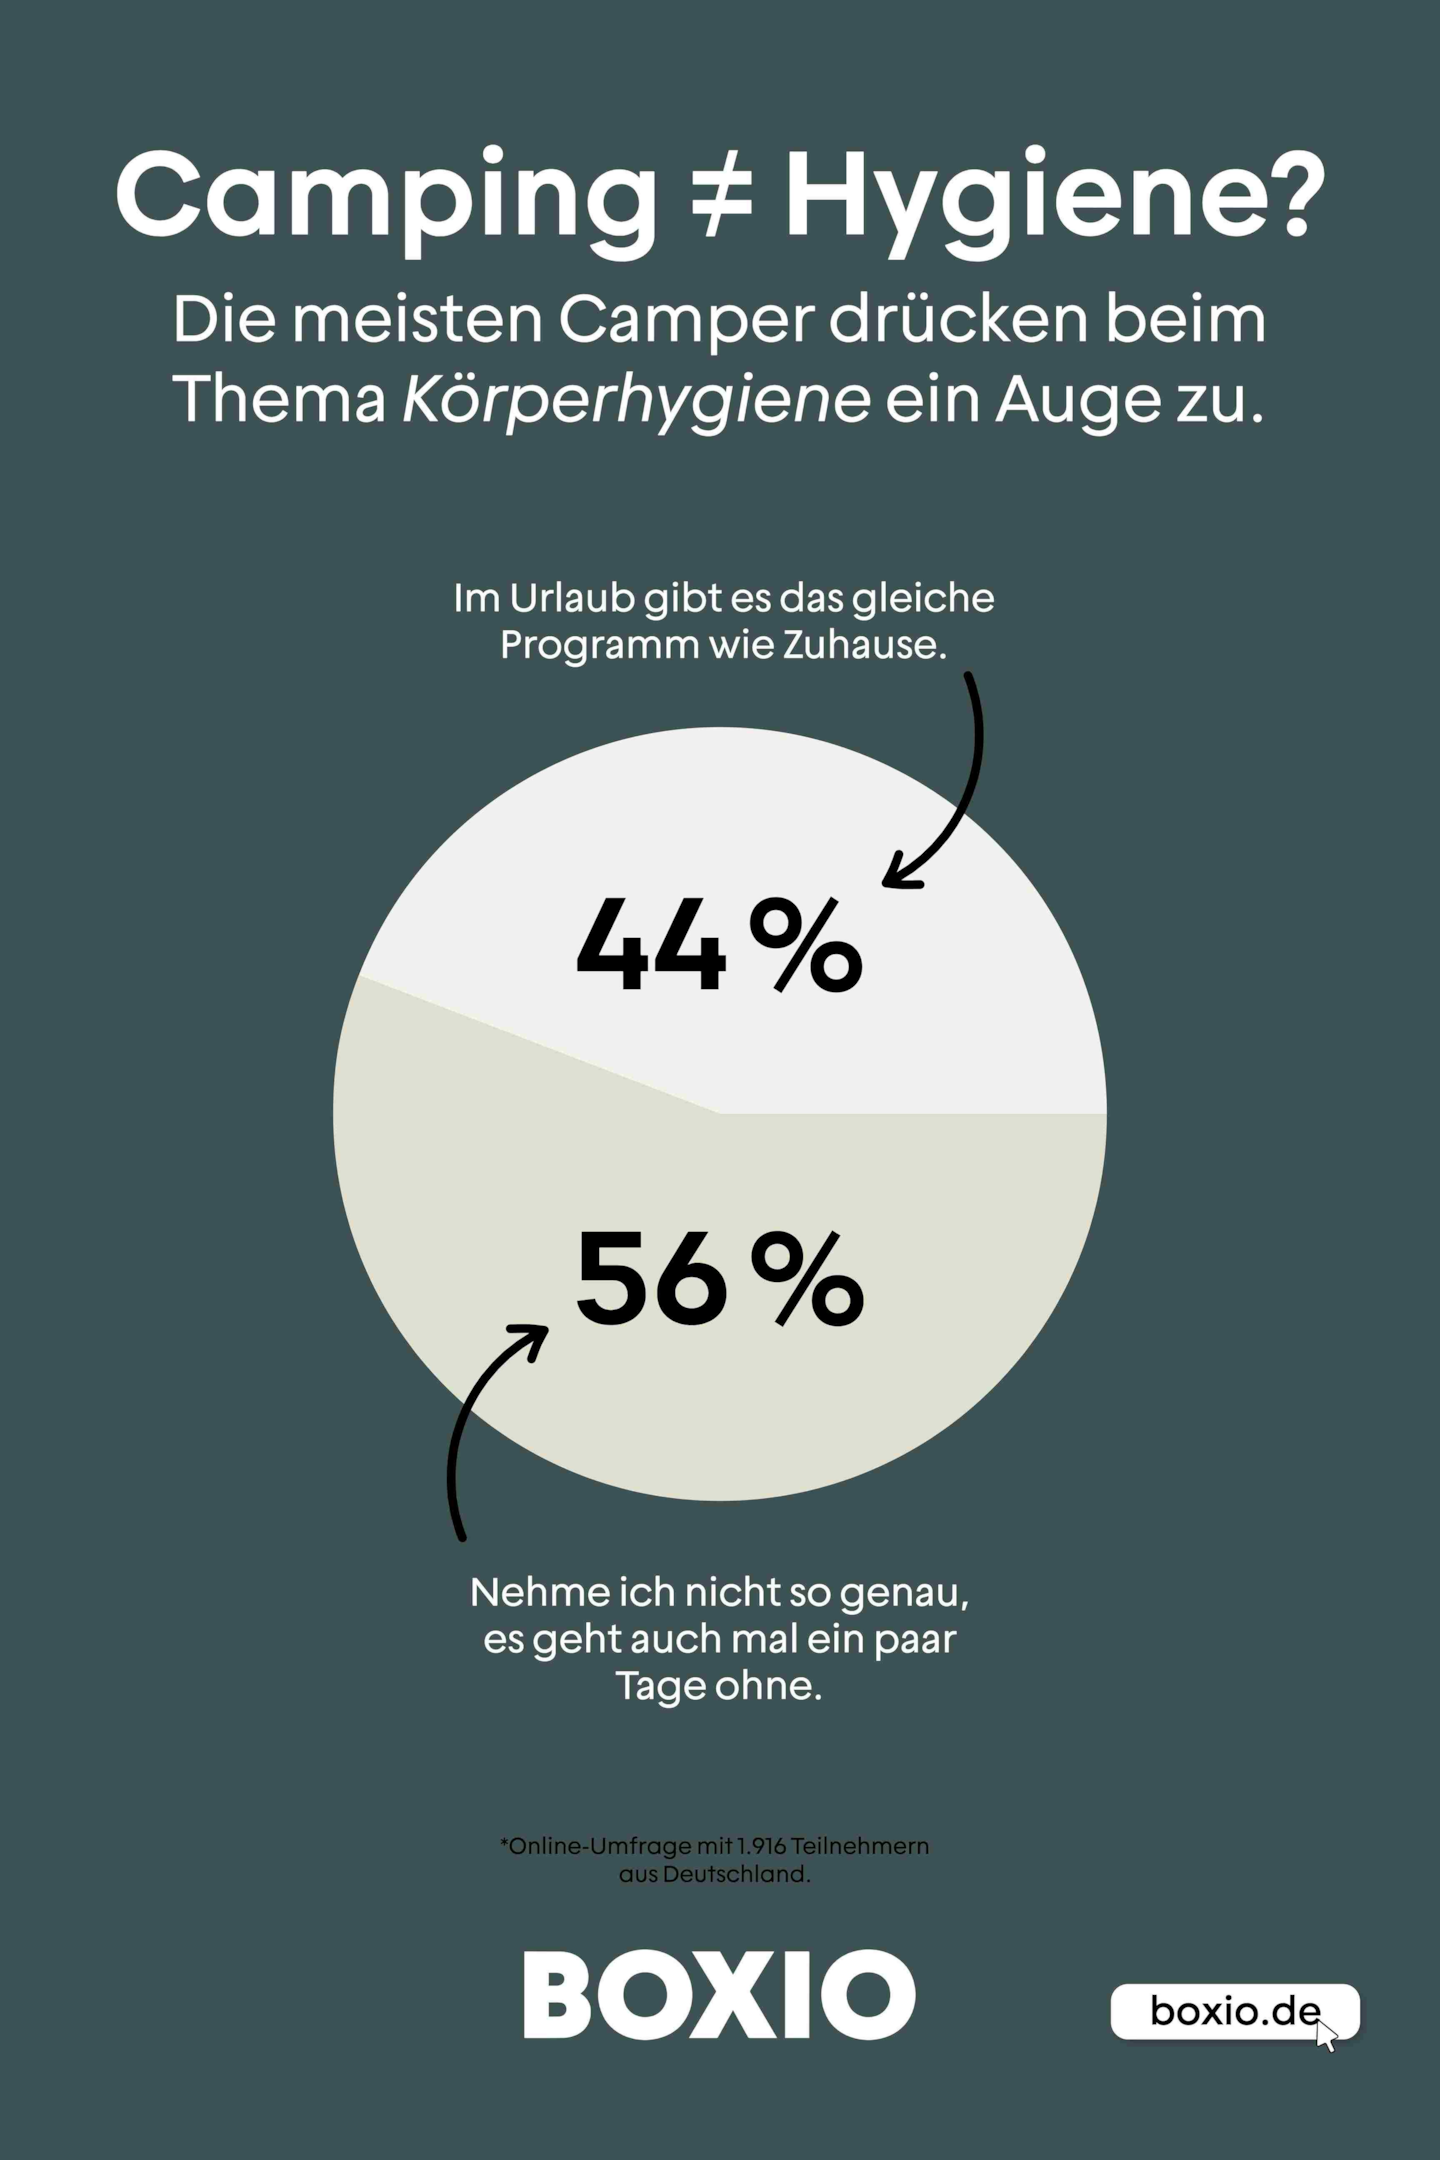 Grafik zum Thema Hygiene im Campingurlaub, Kreisdiagramm: 44 Prozent machen das gleiche wie Zuhause, 56 Prozent nehmen es nicht so genau